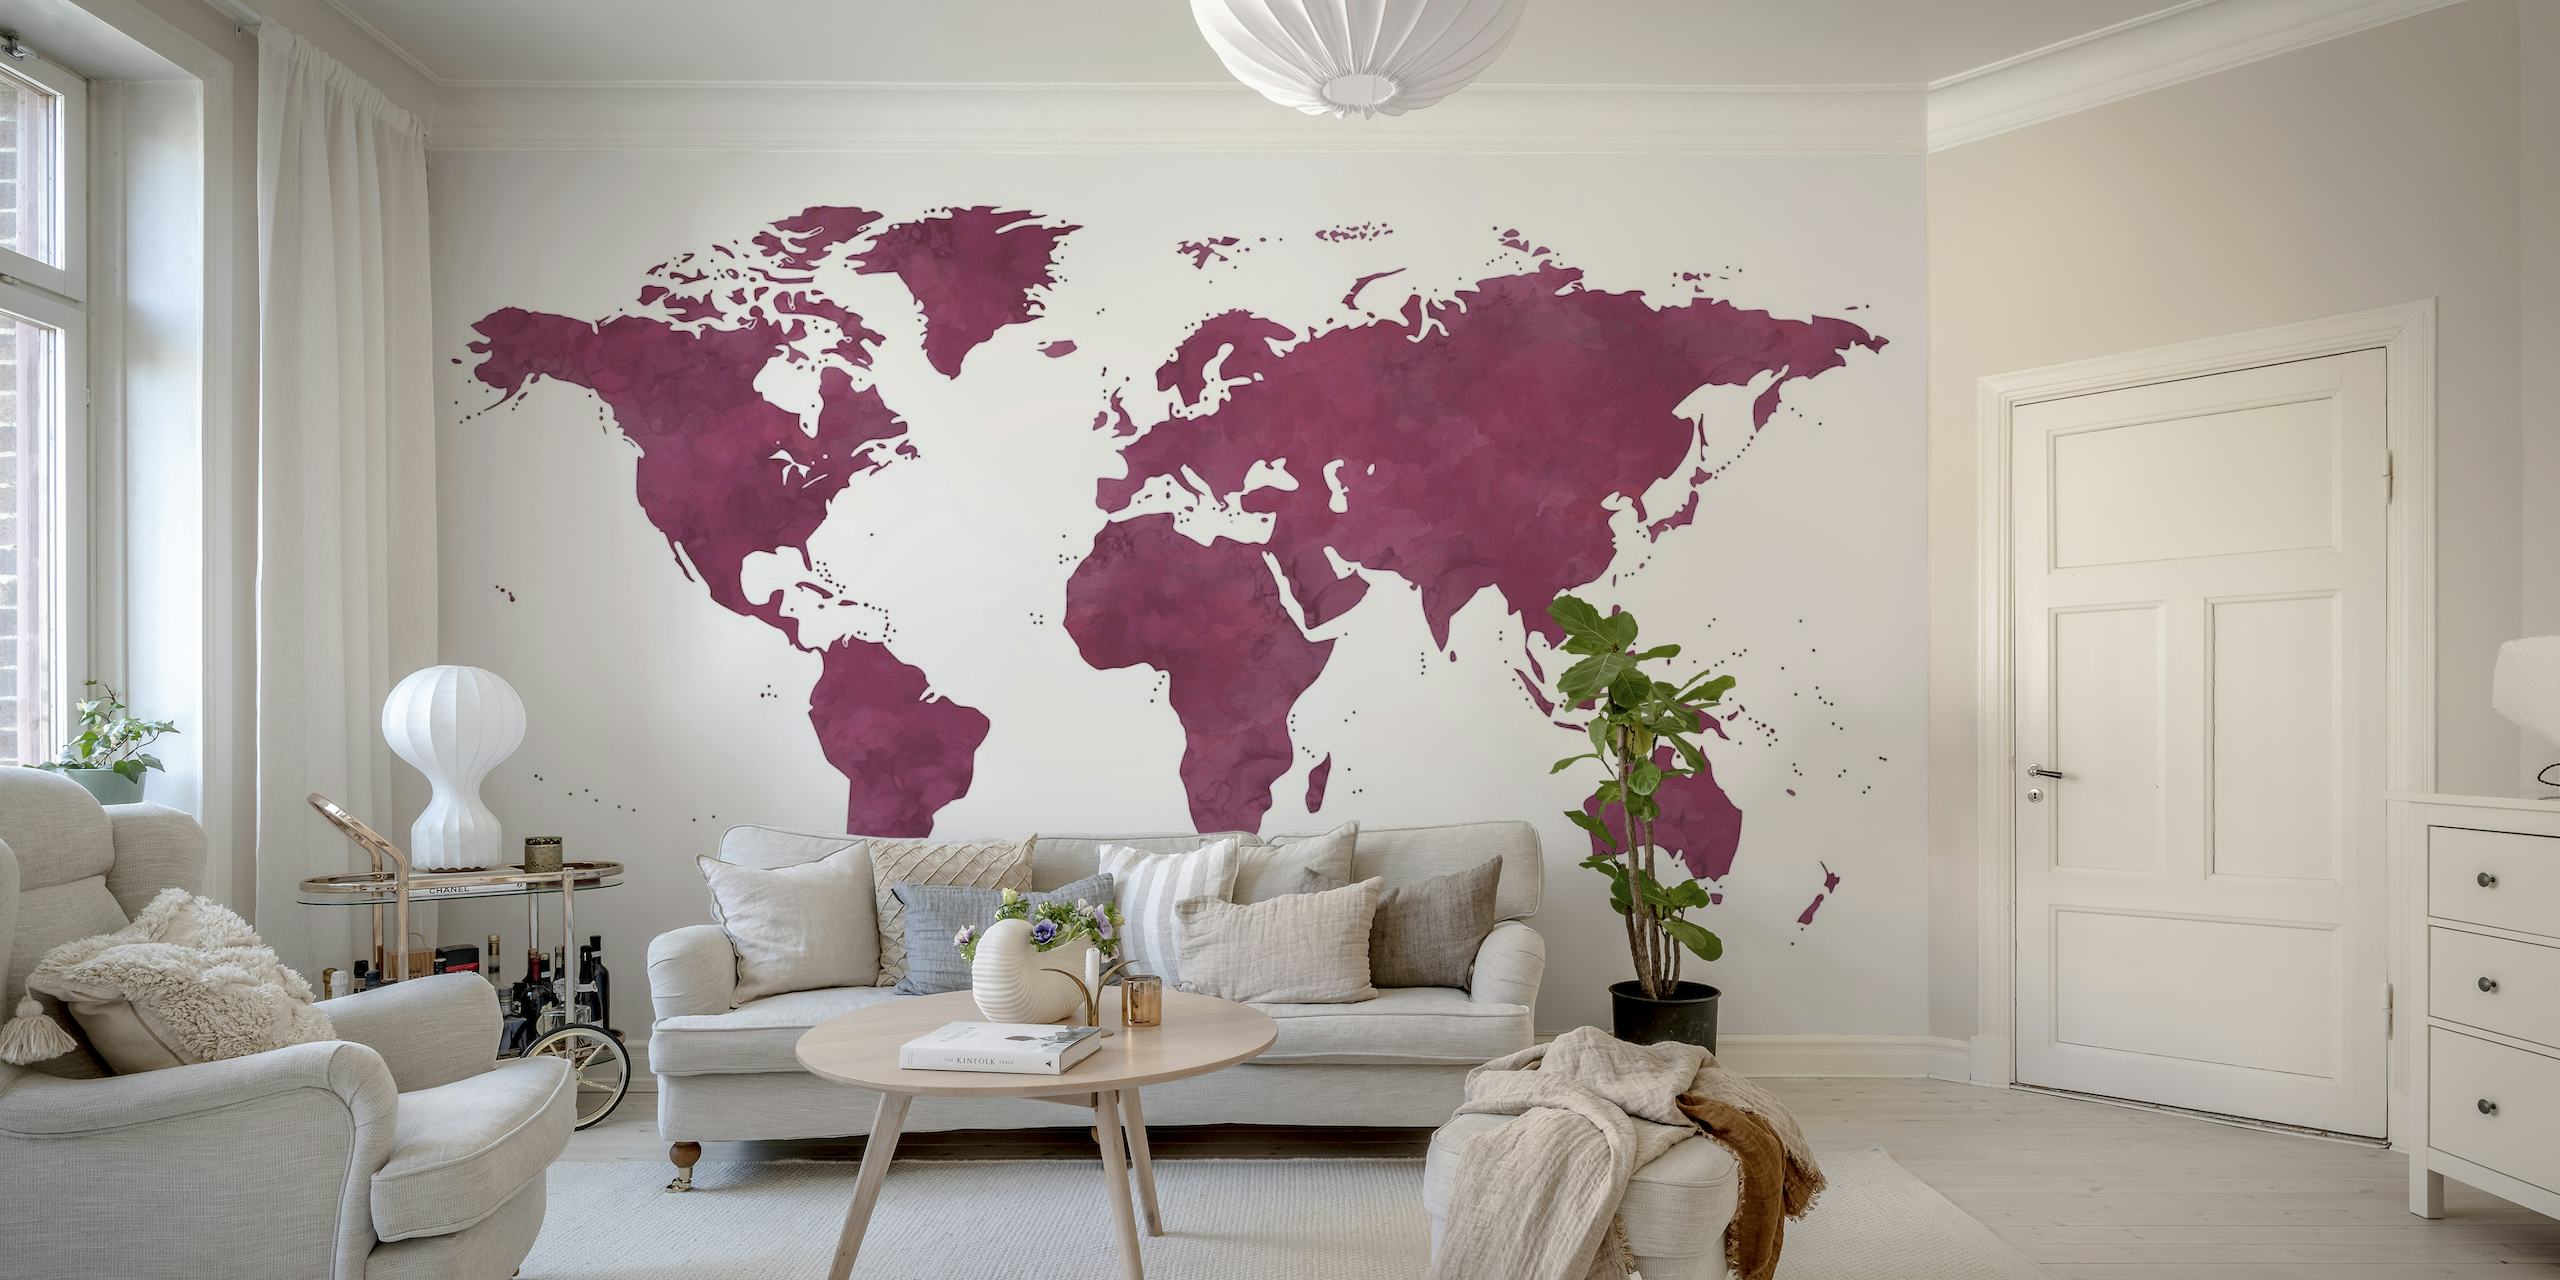 Fioletowa fototapeta z mapą świata